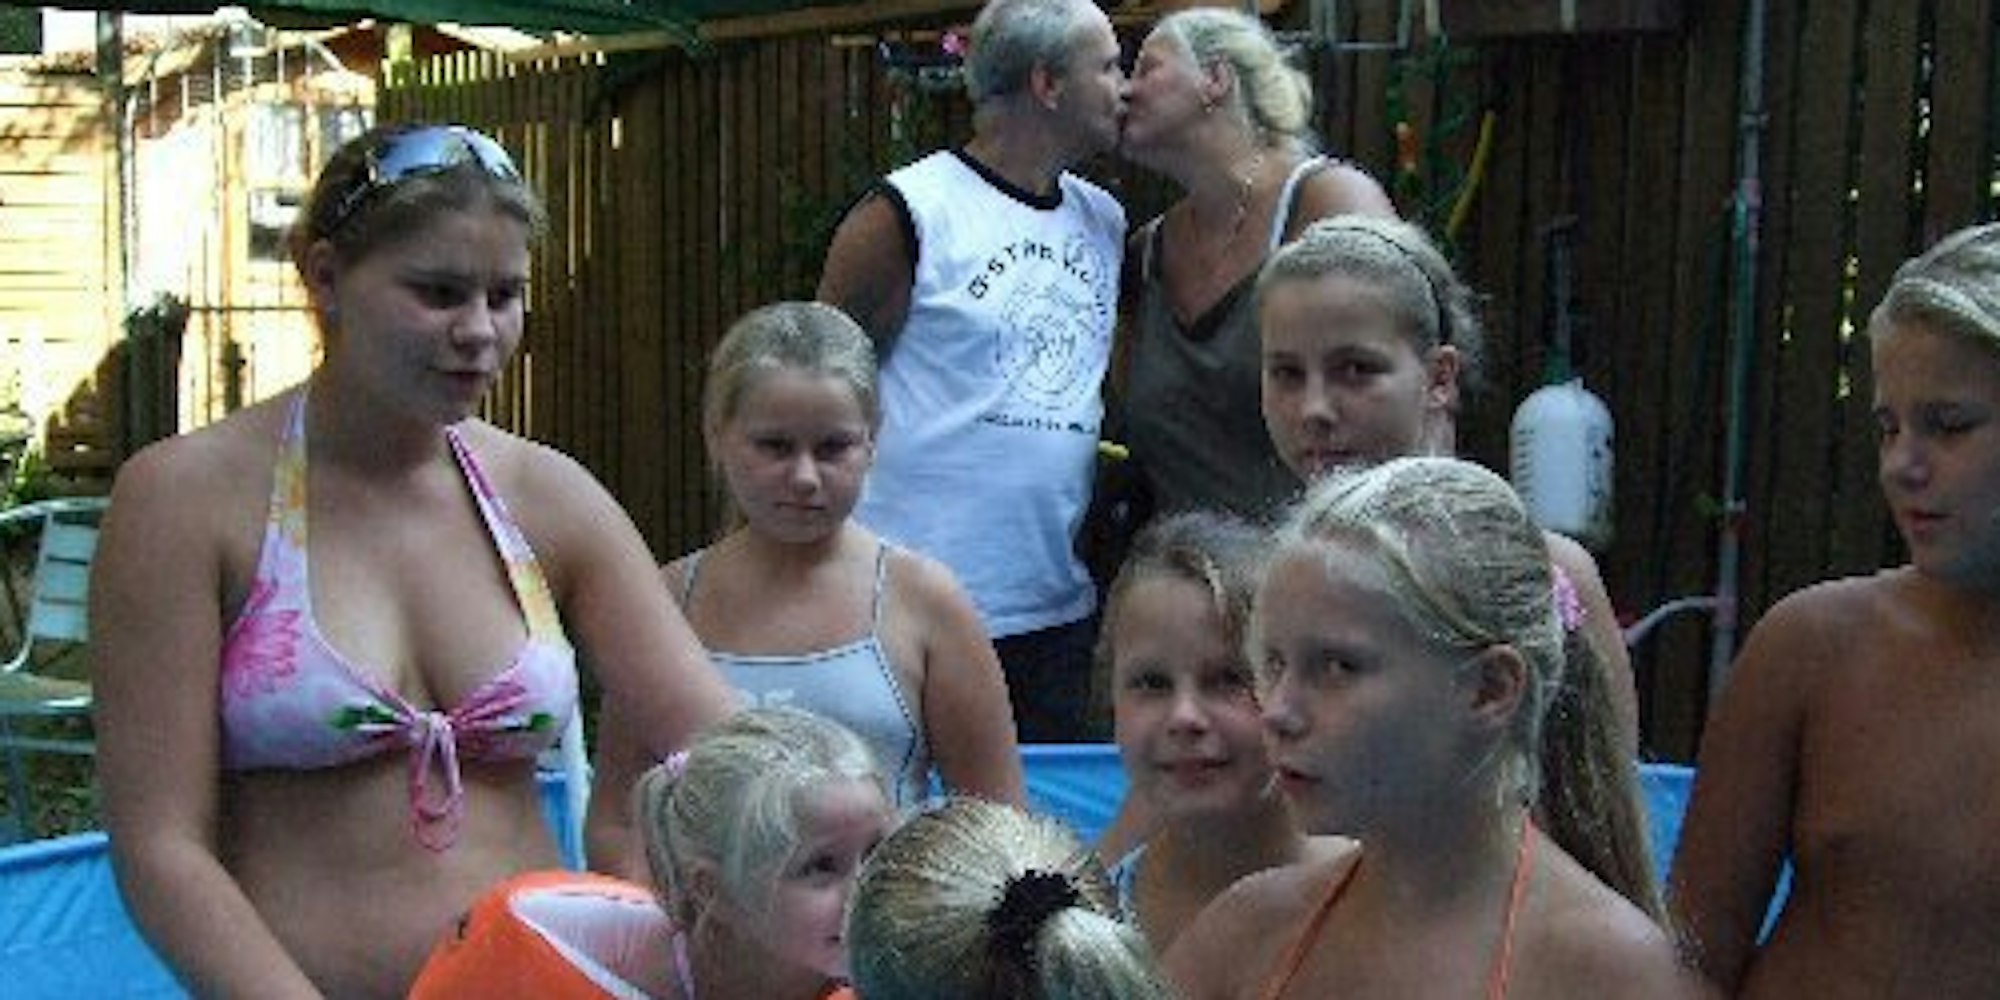 Küsschen, Küsschen: So schön soll es bald auf der Hochzeitsreise in Dubai sein: Mama Silvia und Papa Dieter schwer verliebt, und die Wollny-Rasselbande amüsiert sich im Pool.